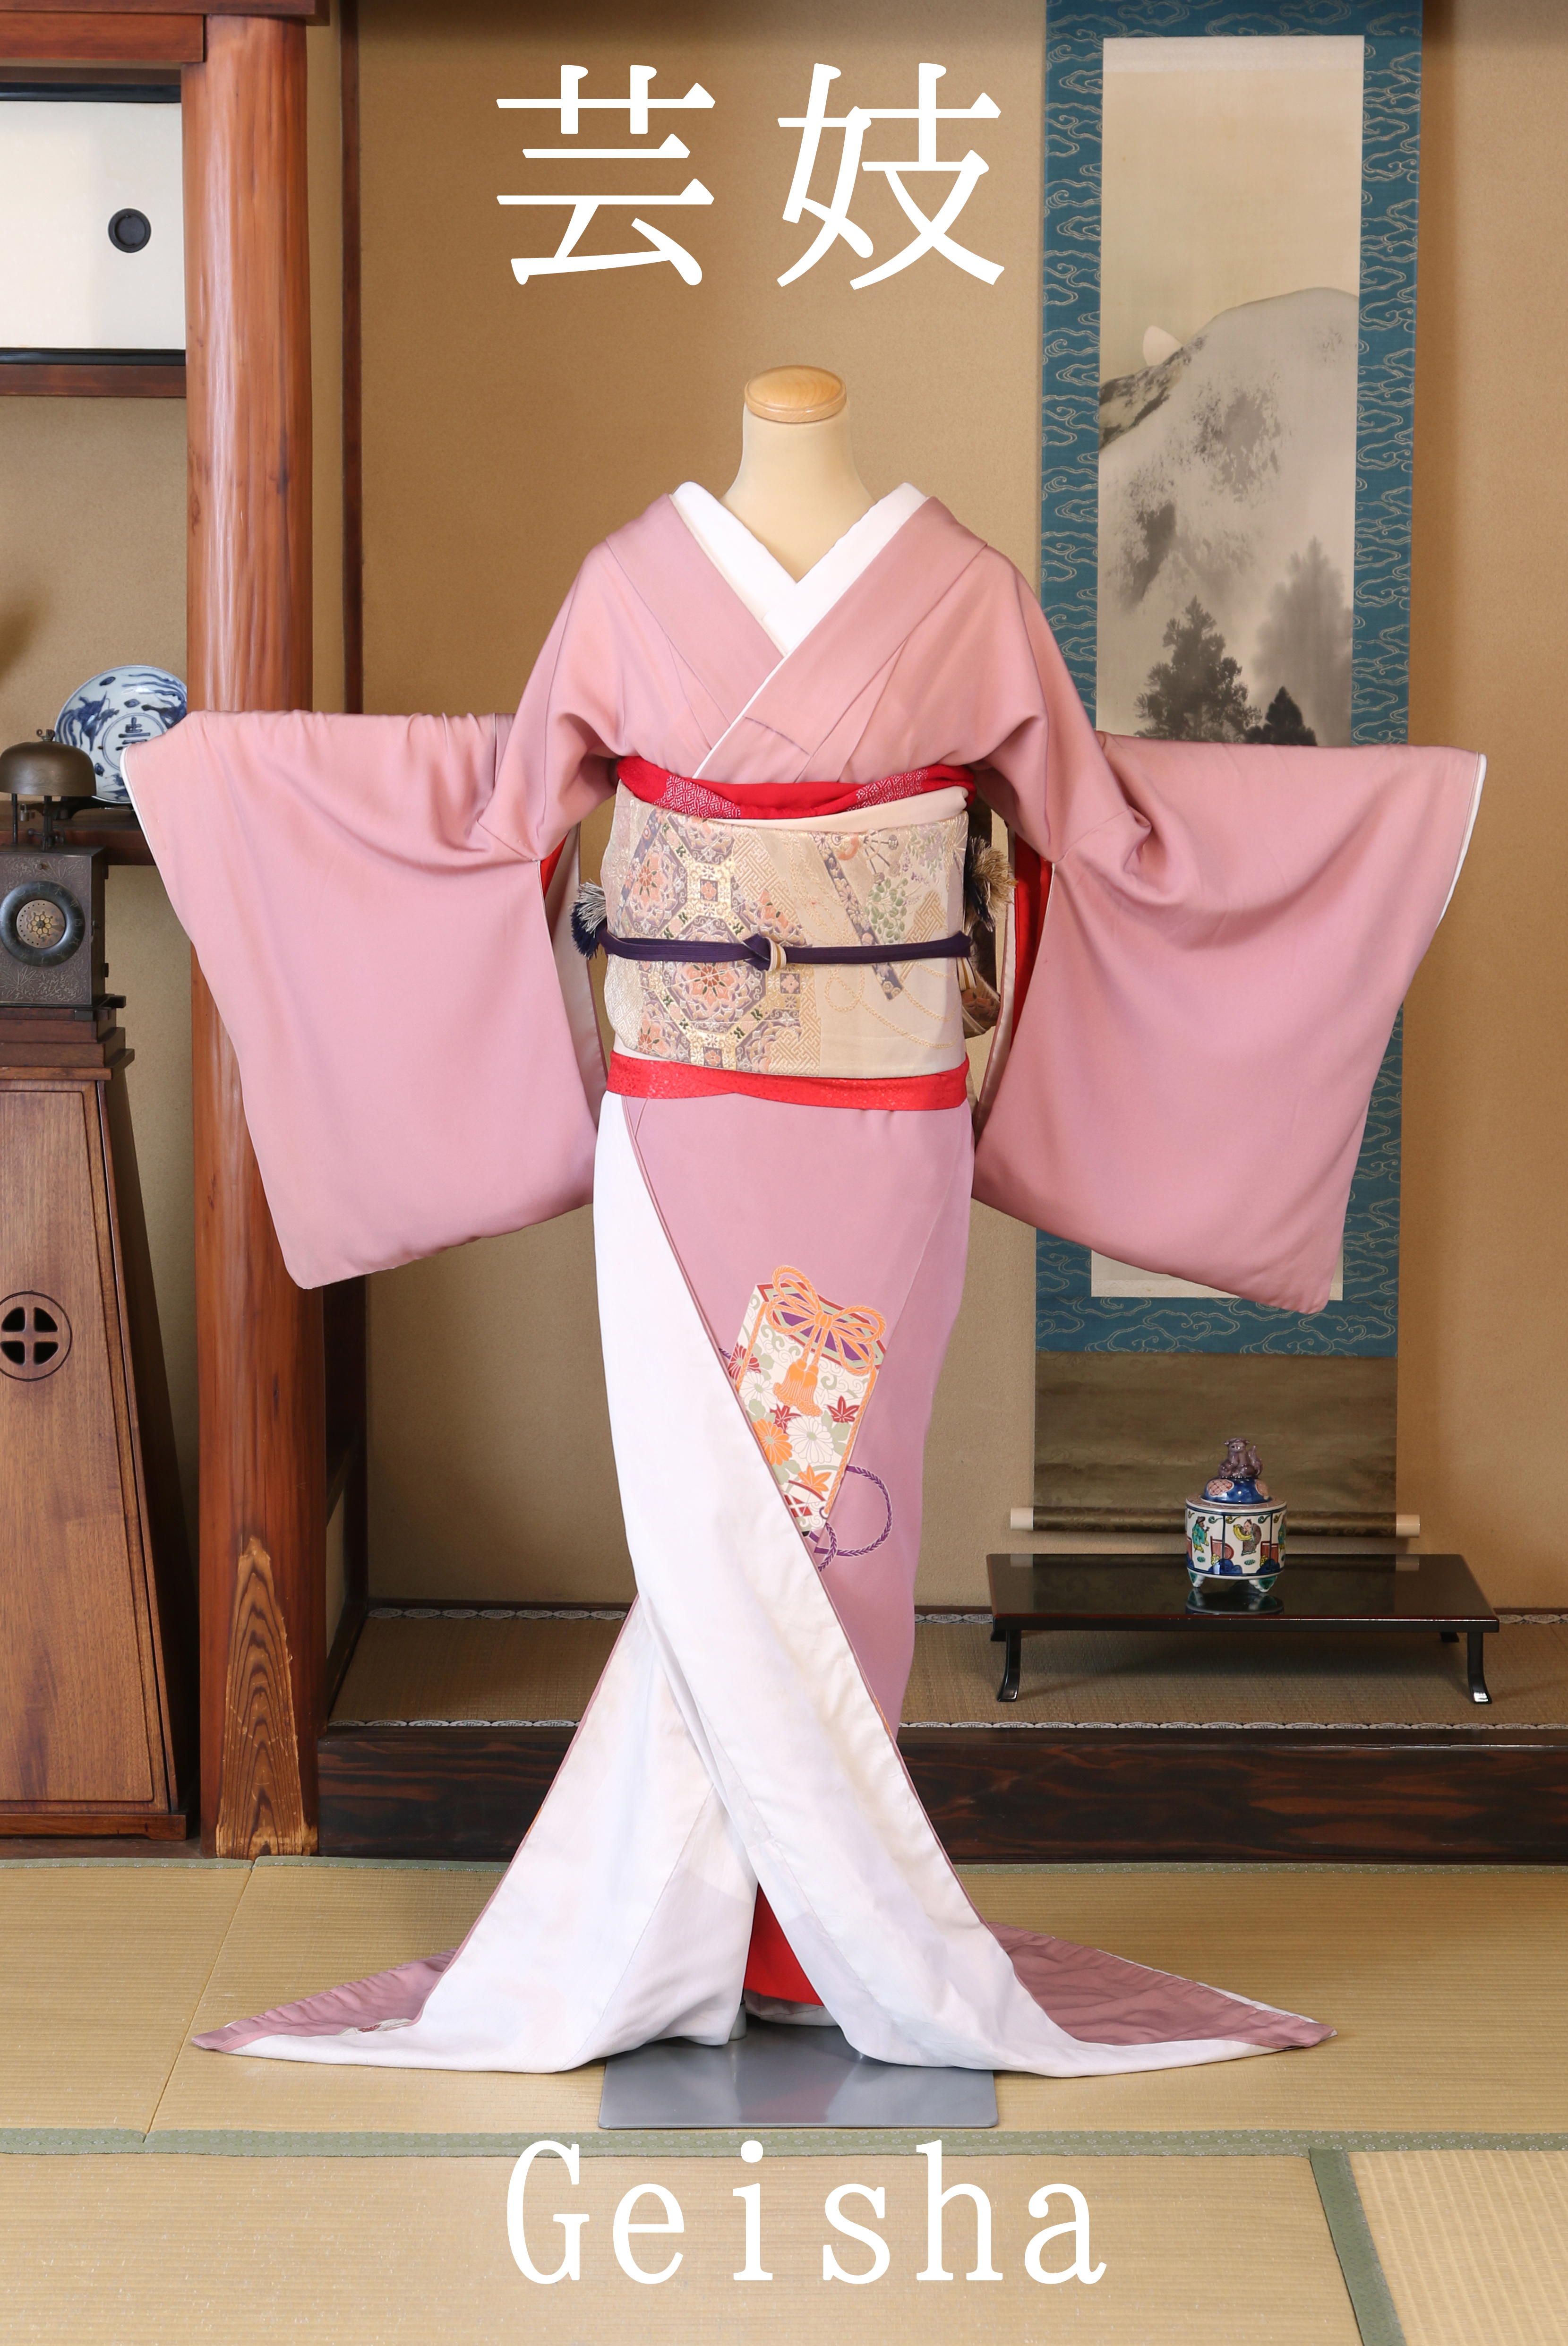 ピンク芸者 Generic 芸者の置物韓服人形、歌舞伎像、家の装飾のための韓服芸者人形, ピンク